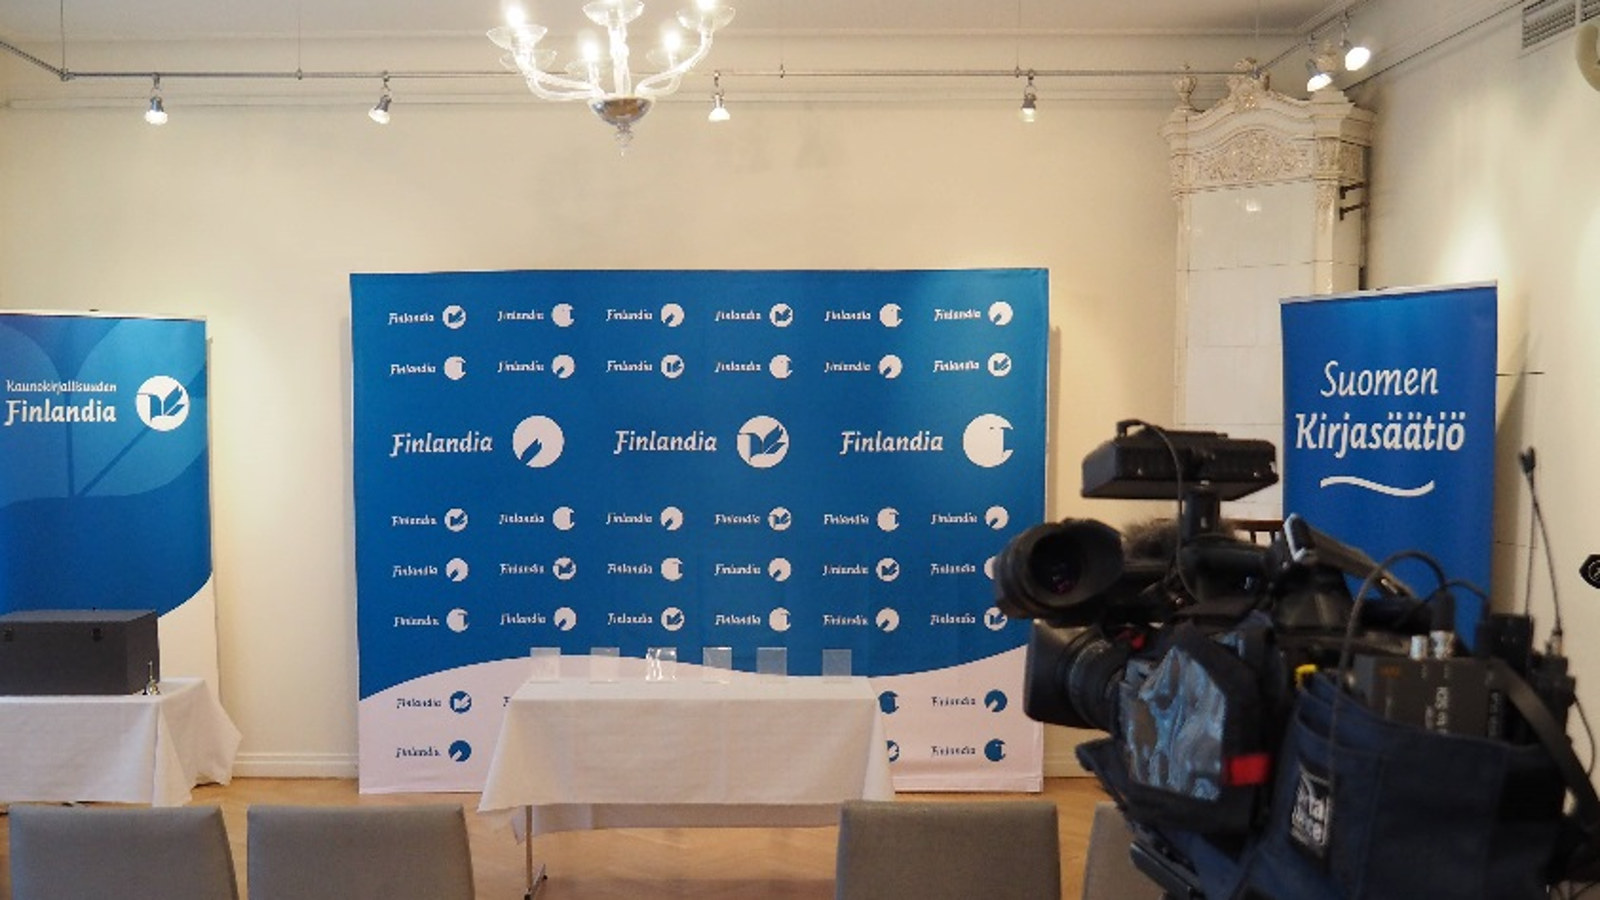 Kuvassa on Finlandia-palkintosasettelu.  Kuva on huoneesta, jossa on taustalla sini-valkoinen Finlandia-palkintojen logojen täyttämä taulu ja Suomen Kirjasäätiön Finlandia-palkinnon roll-upit.  Etualalla on tuoleja ja  teknistä välineistöä.